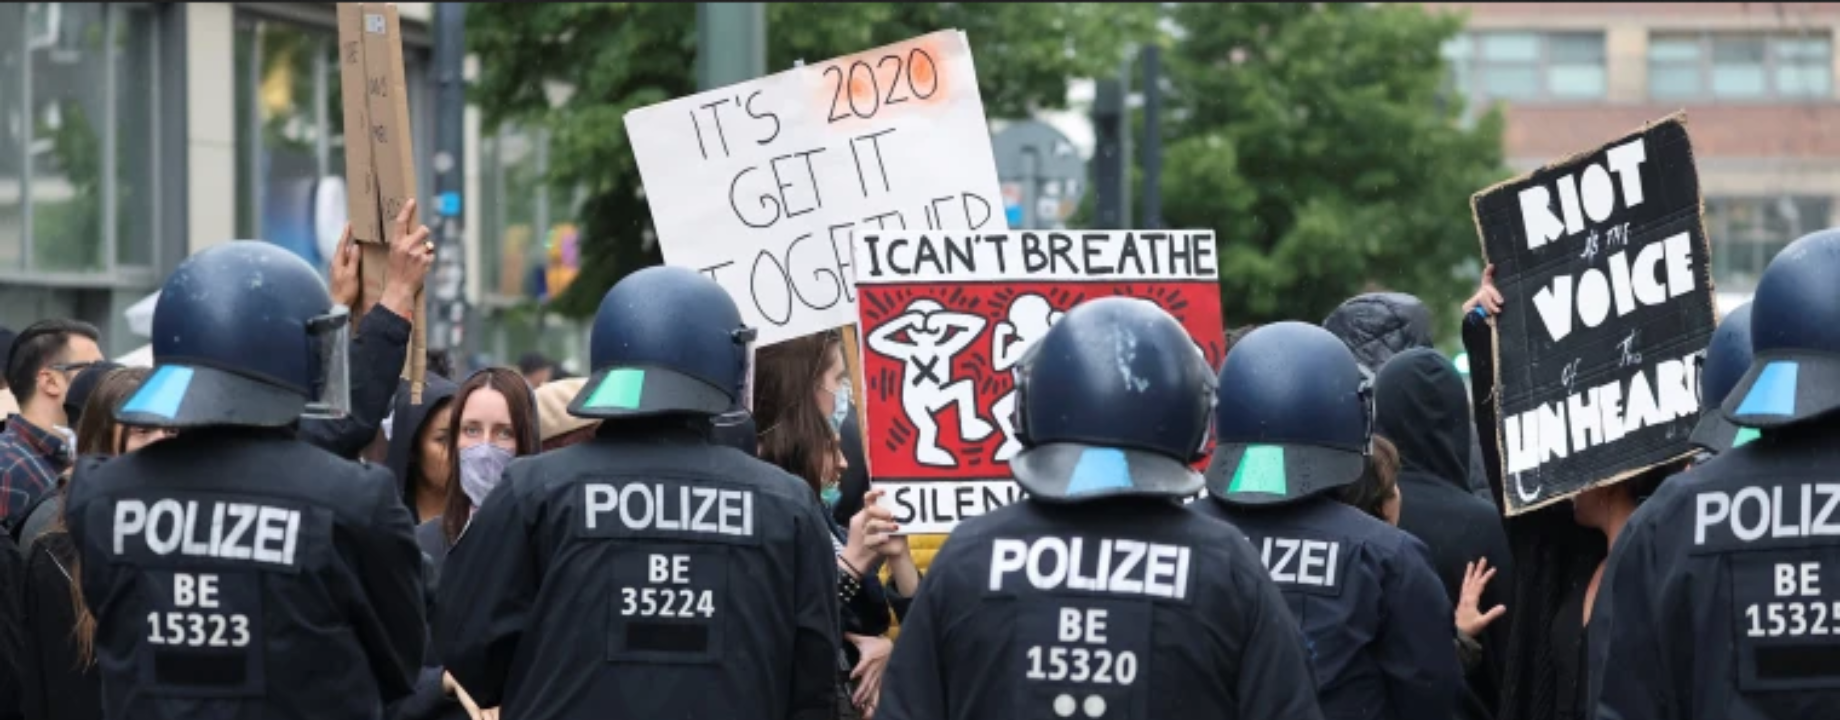 Rendőrség ellenes tüntetés európa